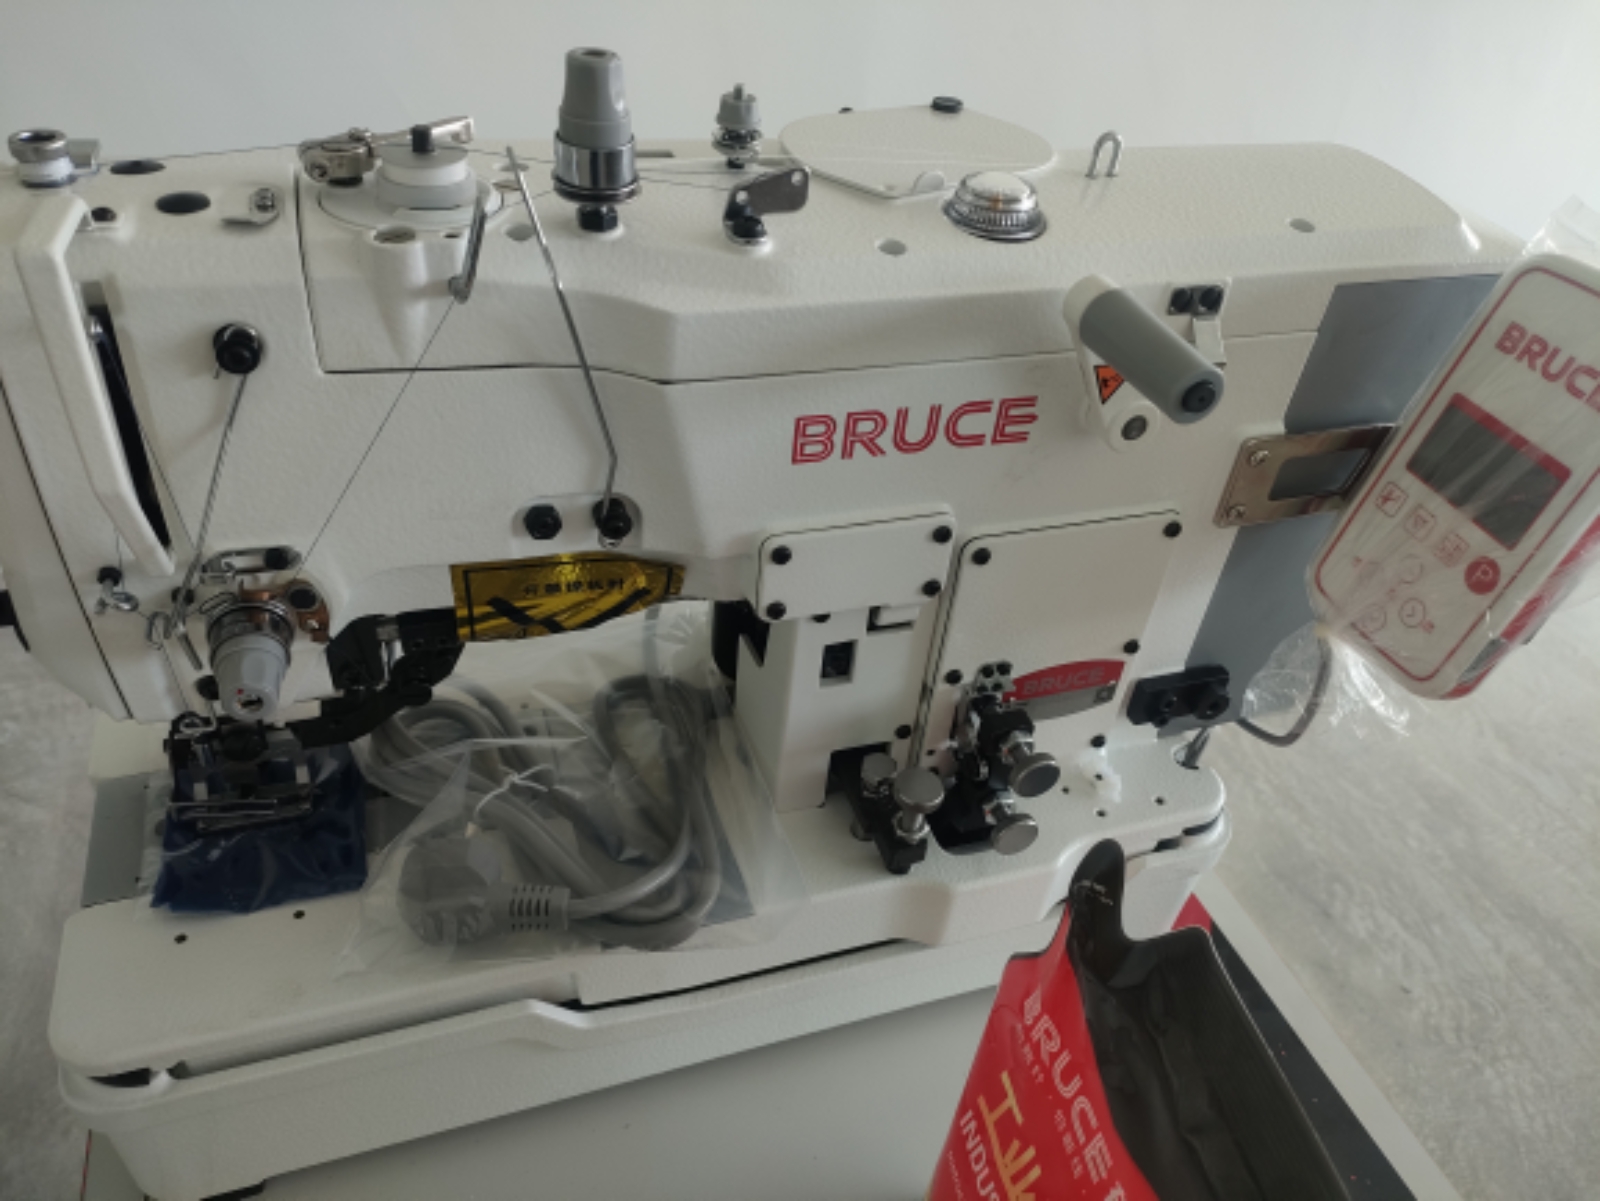 BRUCE BUTONHOLE SEWING MACHINE